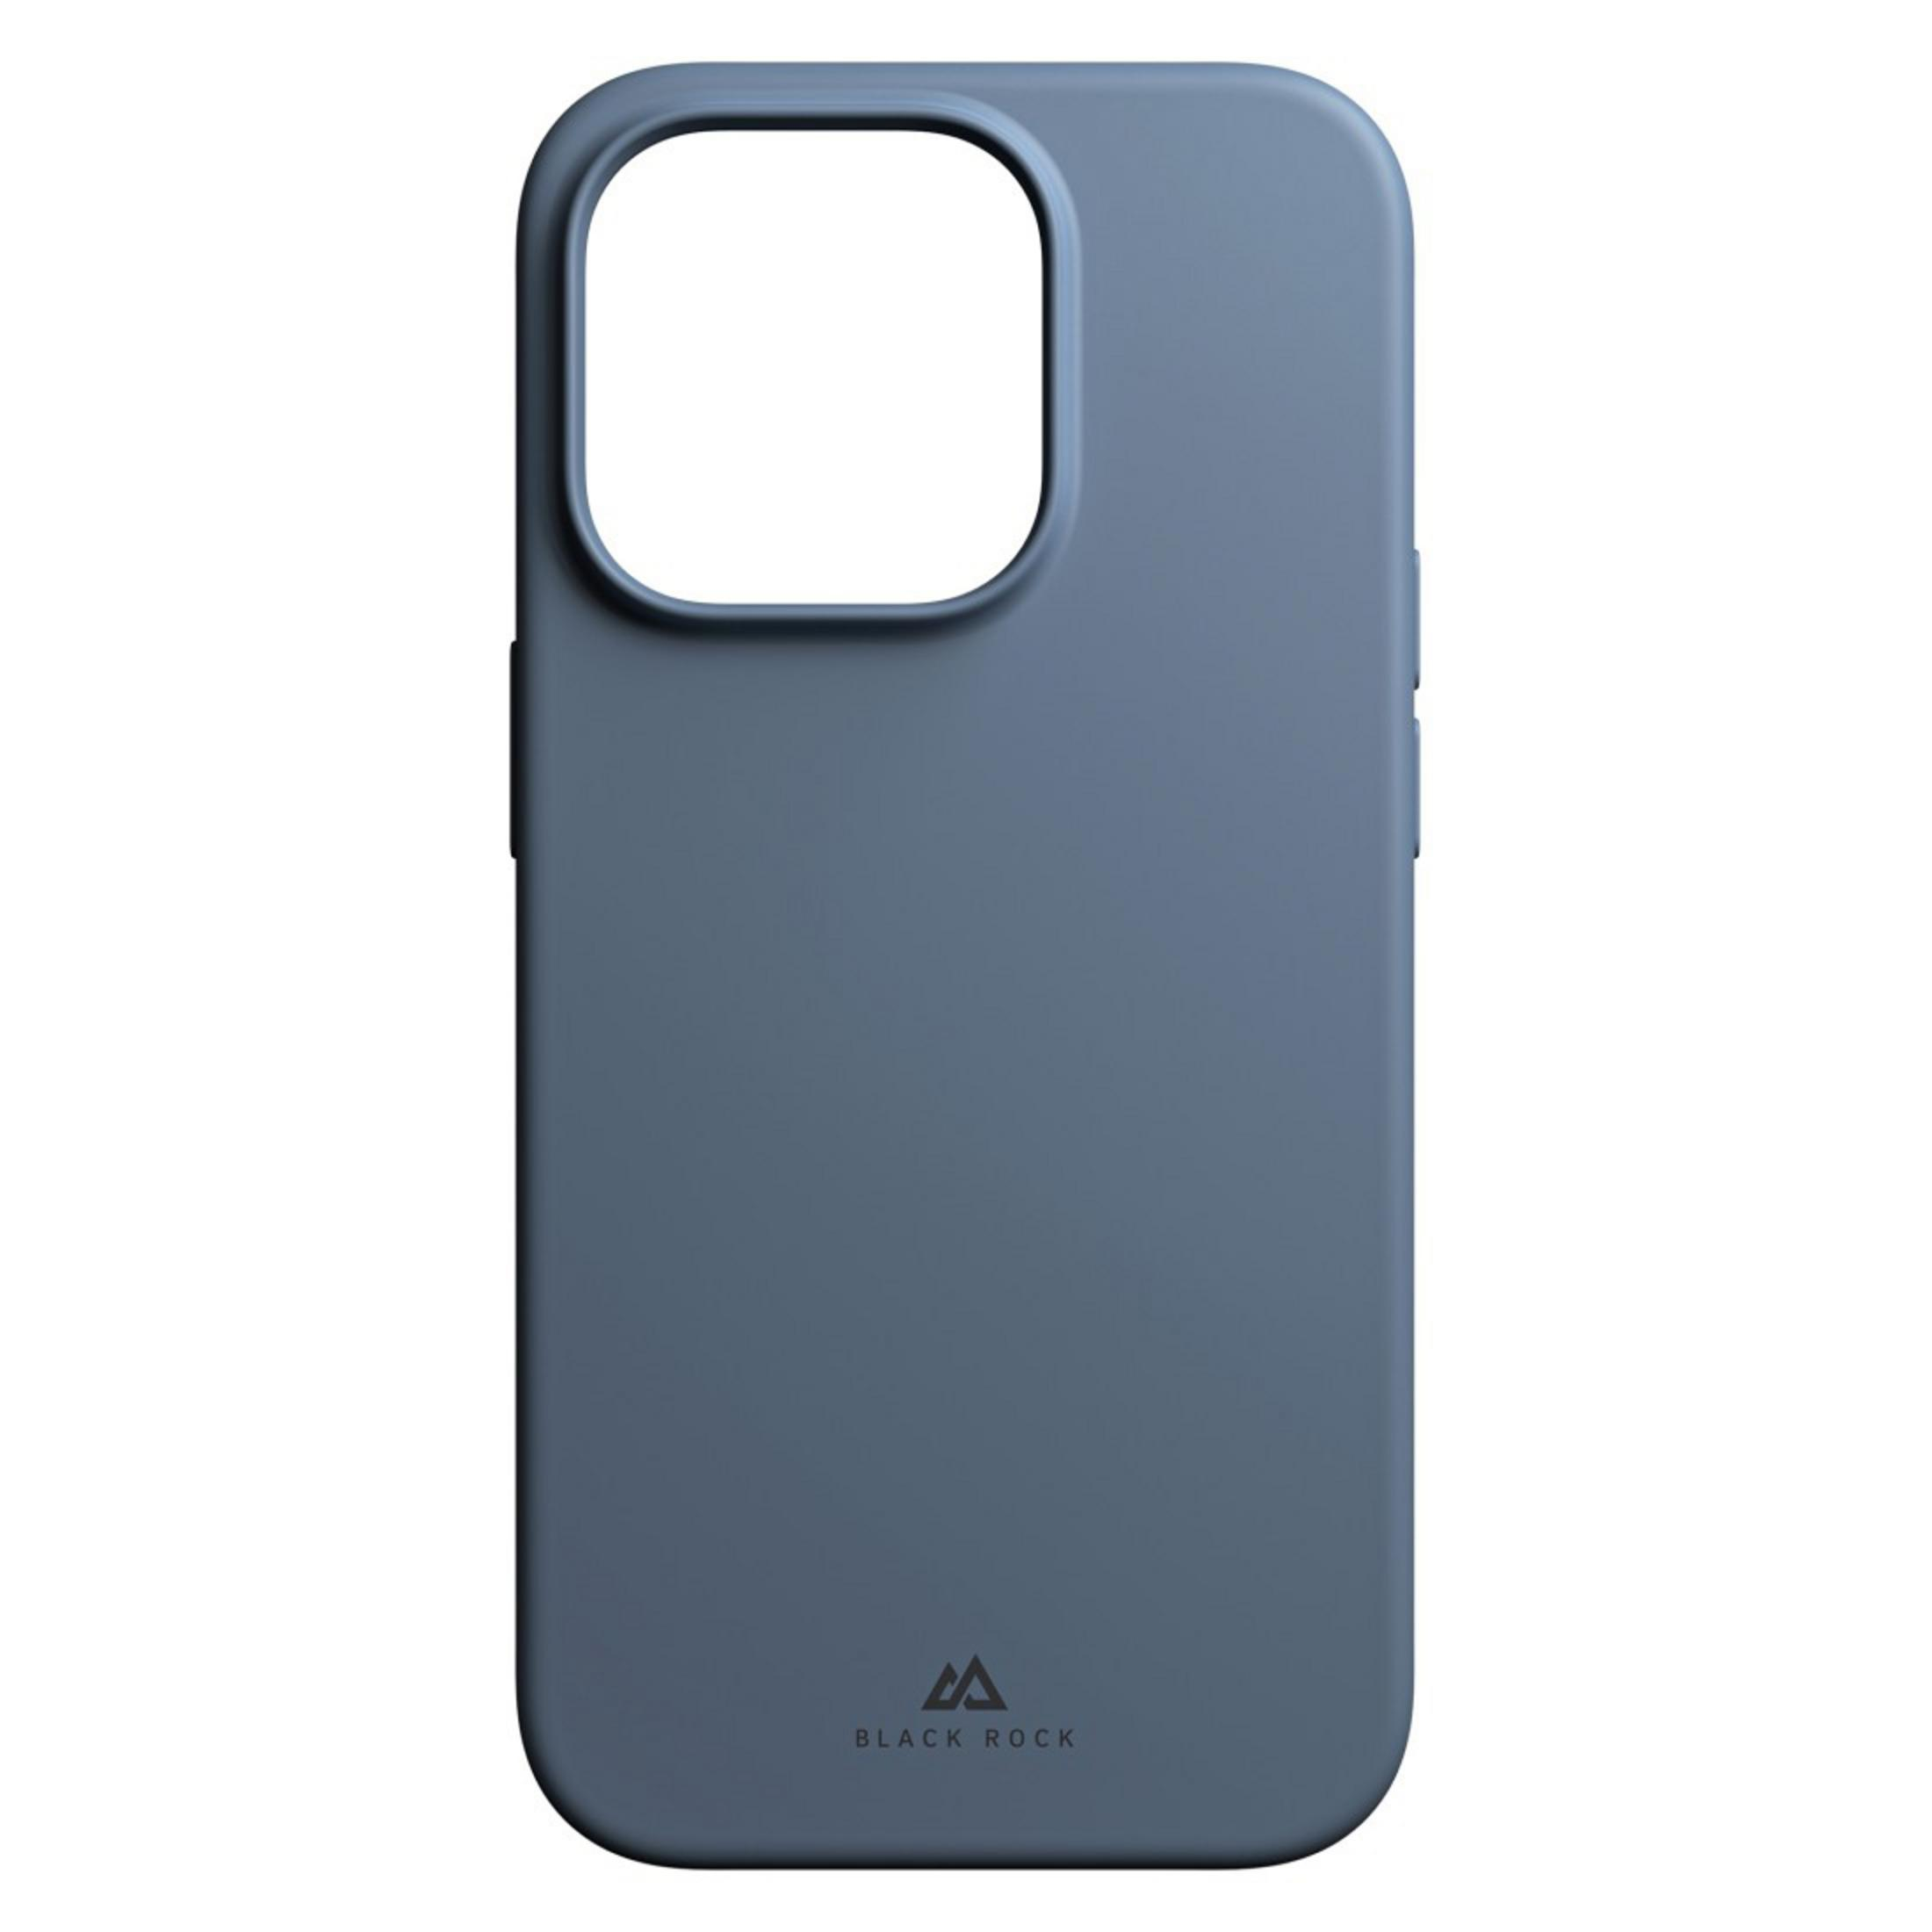 HAMA 220154 Blue iPhone CASE Grey Pro, PRO 14 14 Apple, BG, IPH CO Backcover, URBAN